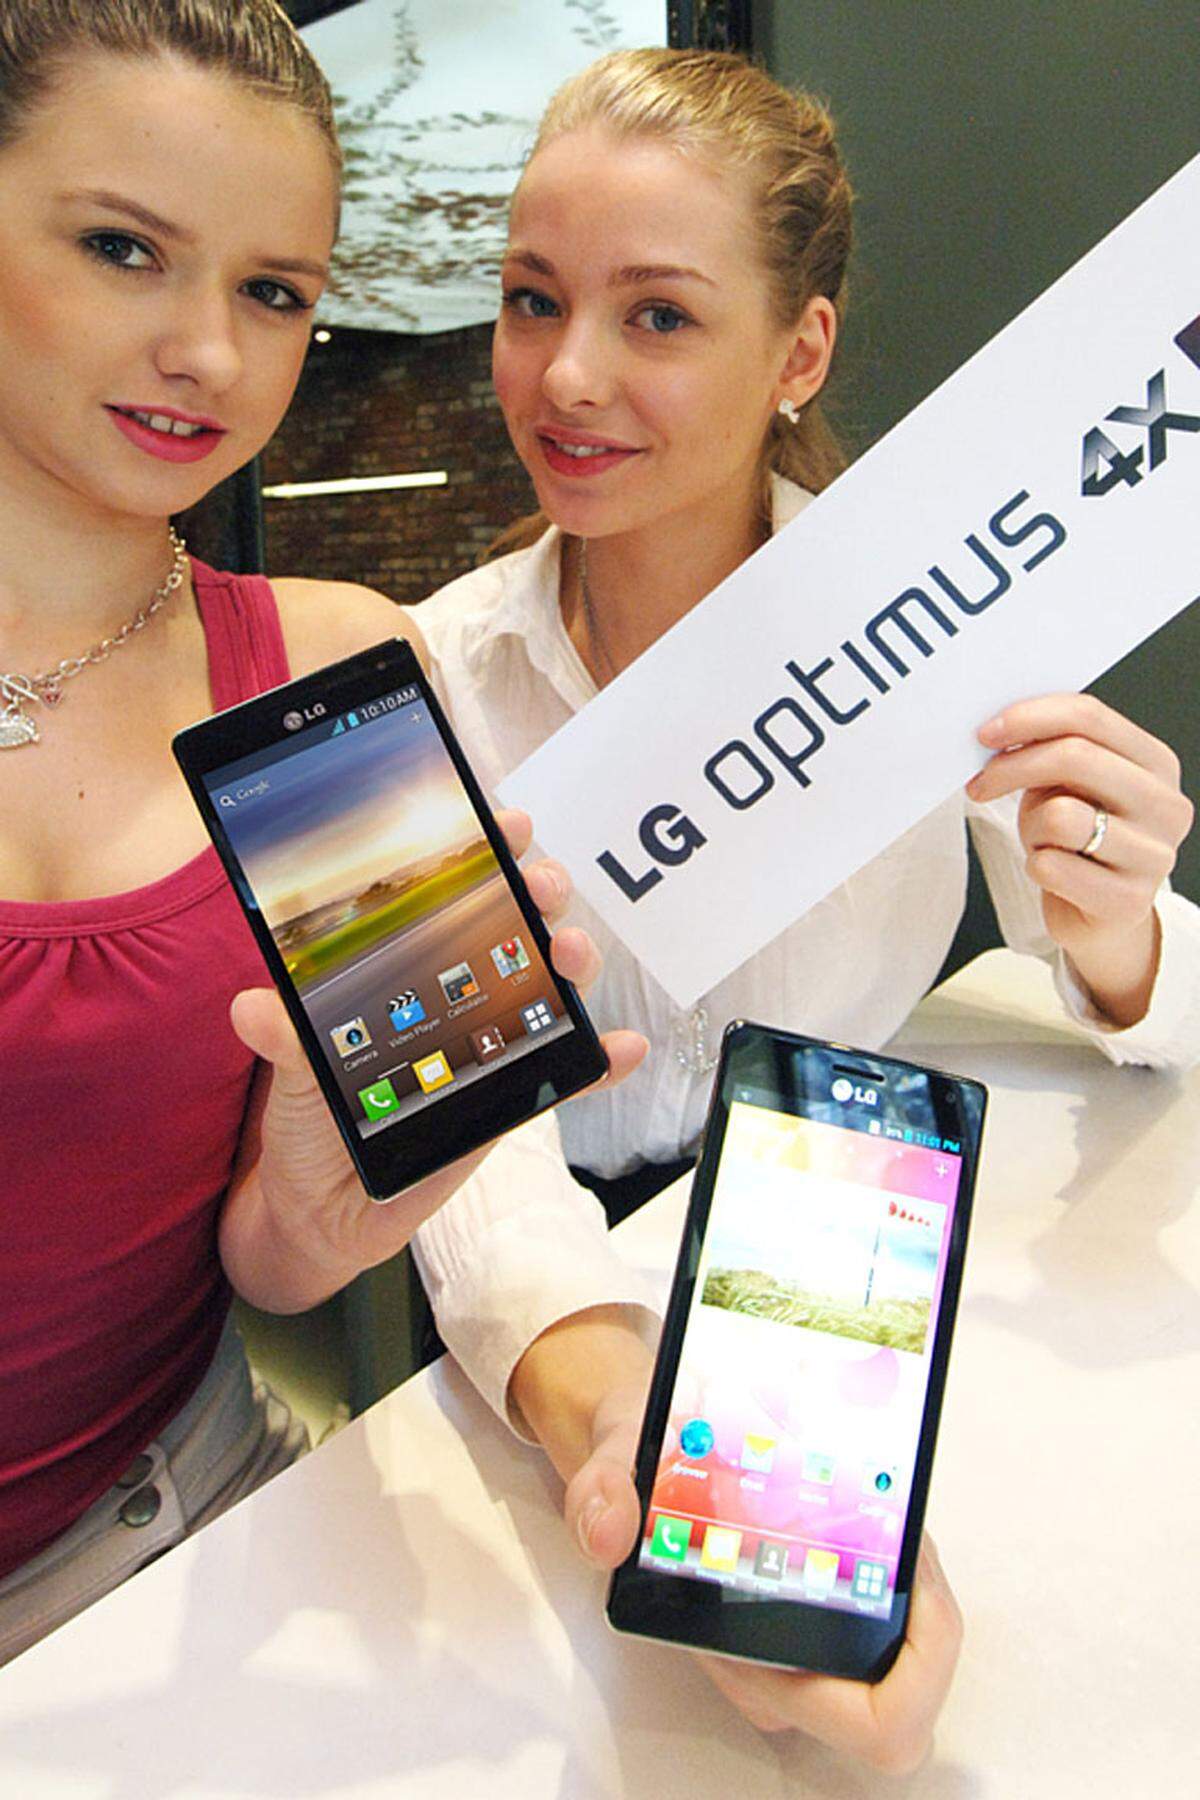 LG ist der erste Hersteller, der offiziell ein Quad-Core-Smartphone vorgestellt hat. Das Optimus 4X HD kommt mit einem 4,7-Zoll-Display mit einer Auflösung von 1280 x 720 Pixeln, Fotos können mit einer 8-Megapixel-Kamera geschoßen werden. Der Prozessor Tegra 3 ist darauf ausgelegt, trotz der vier Kerne nicht mehr Energie zu verbrauchen.